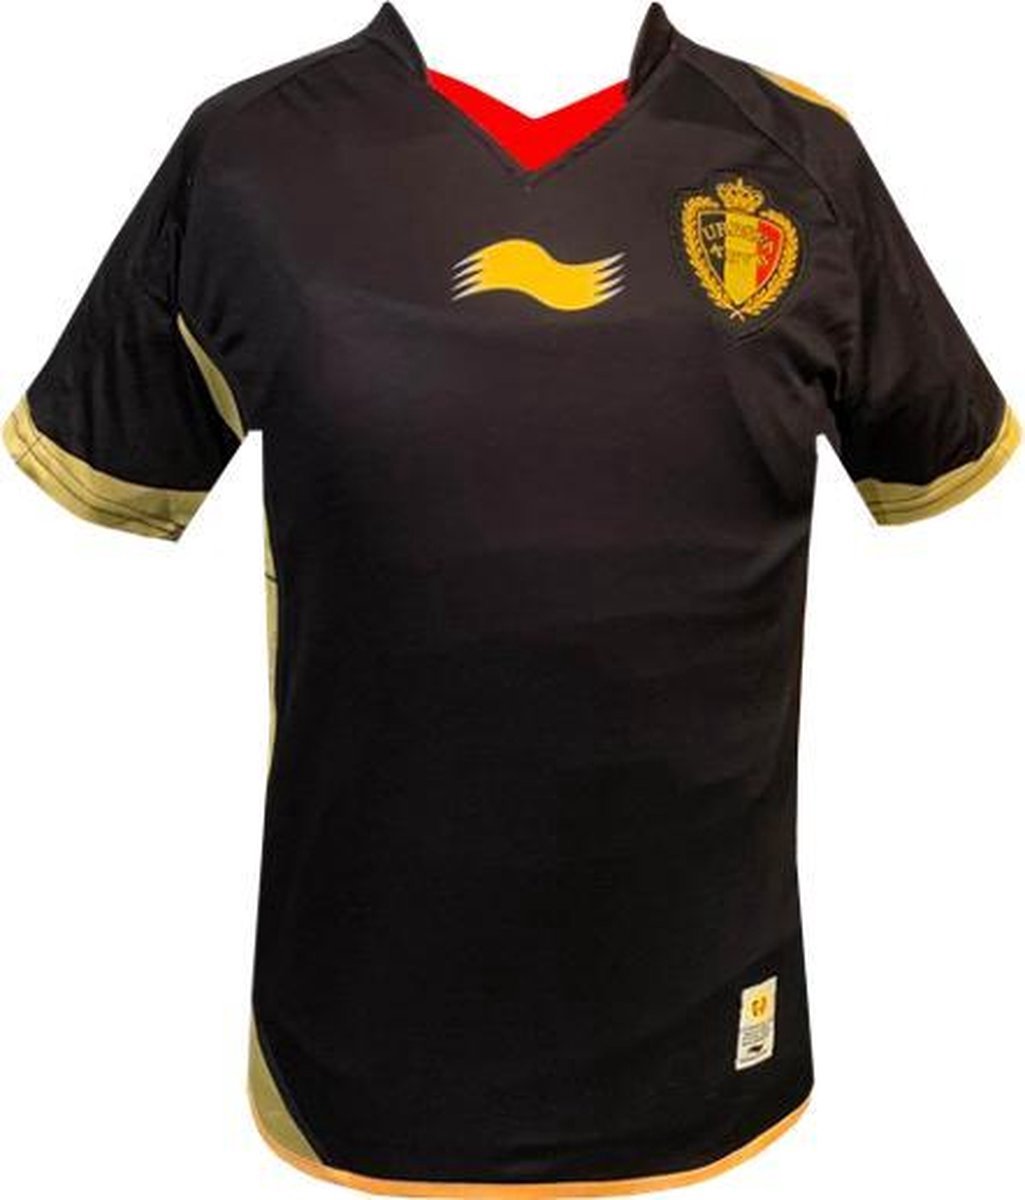 Rode Duivels - Vintage Official Match Shirt 2012 - Kinderen - Zwart - Maat: 7/8 jaar